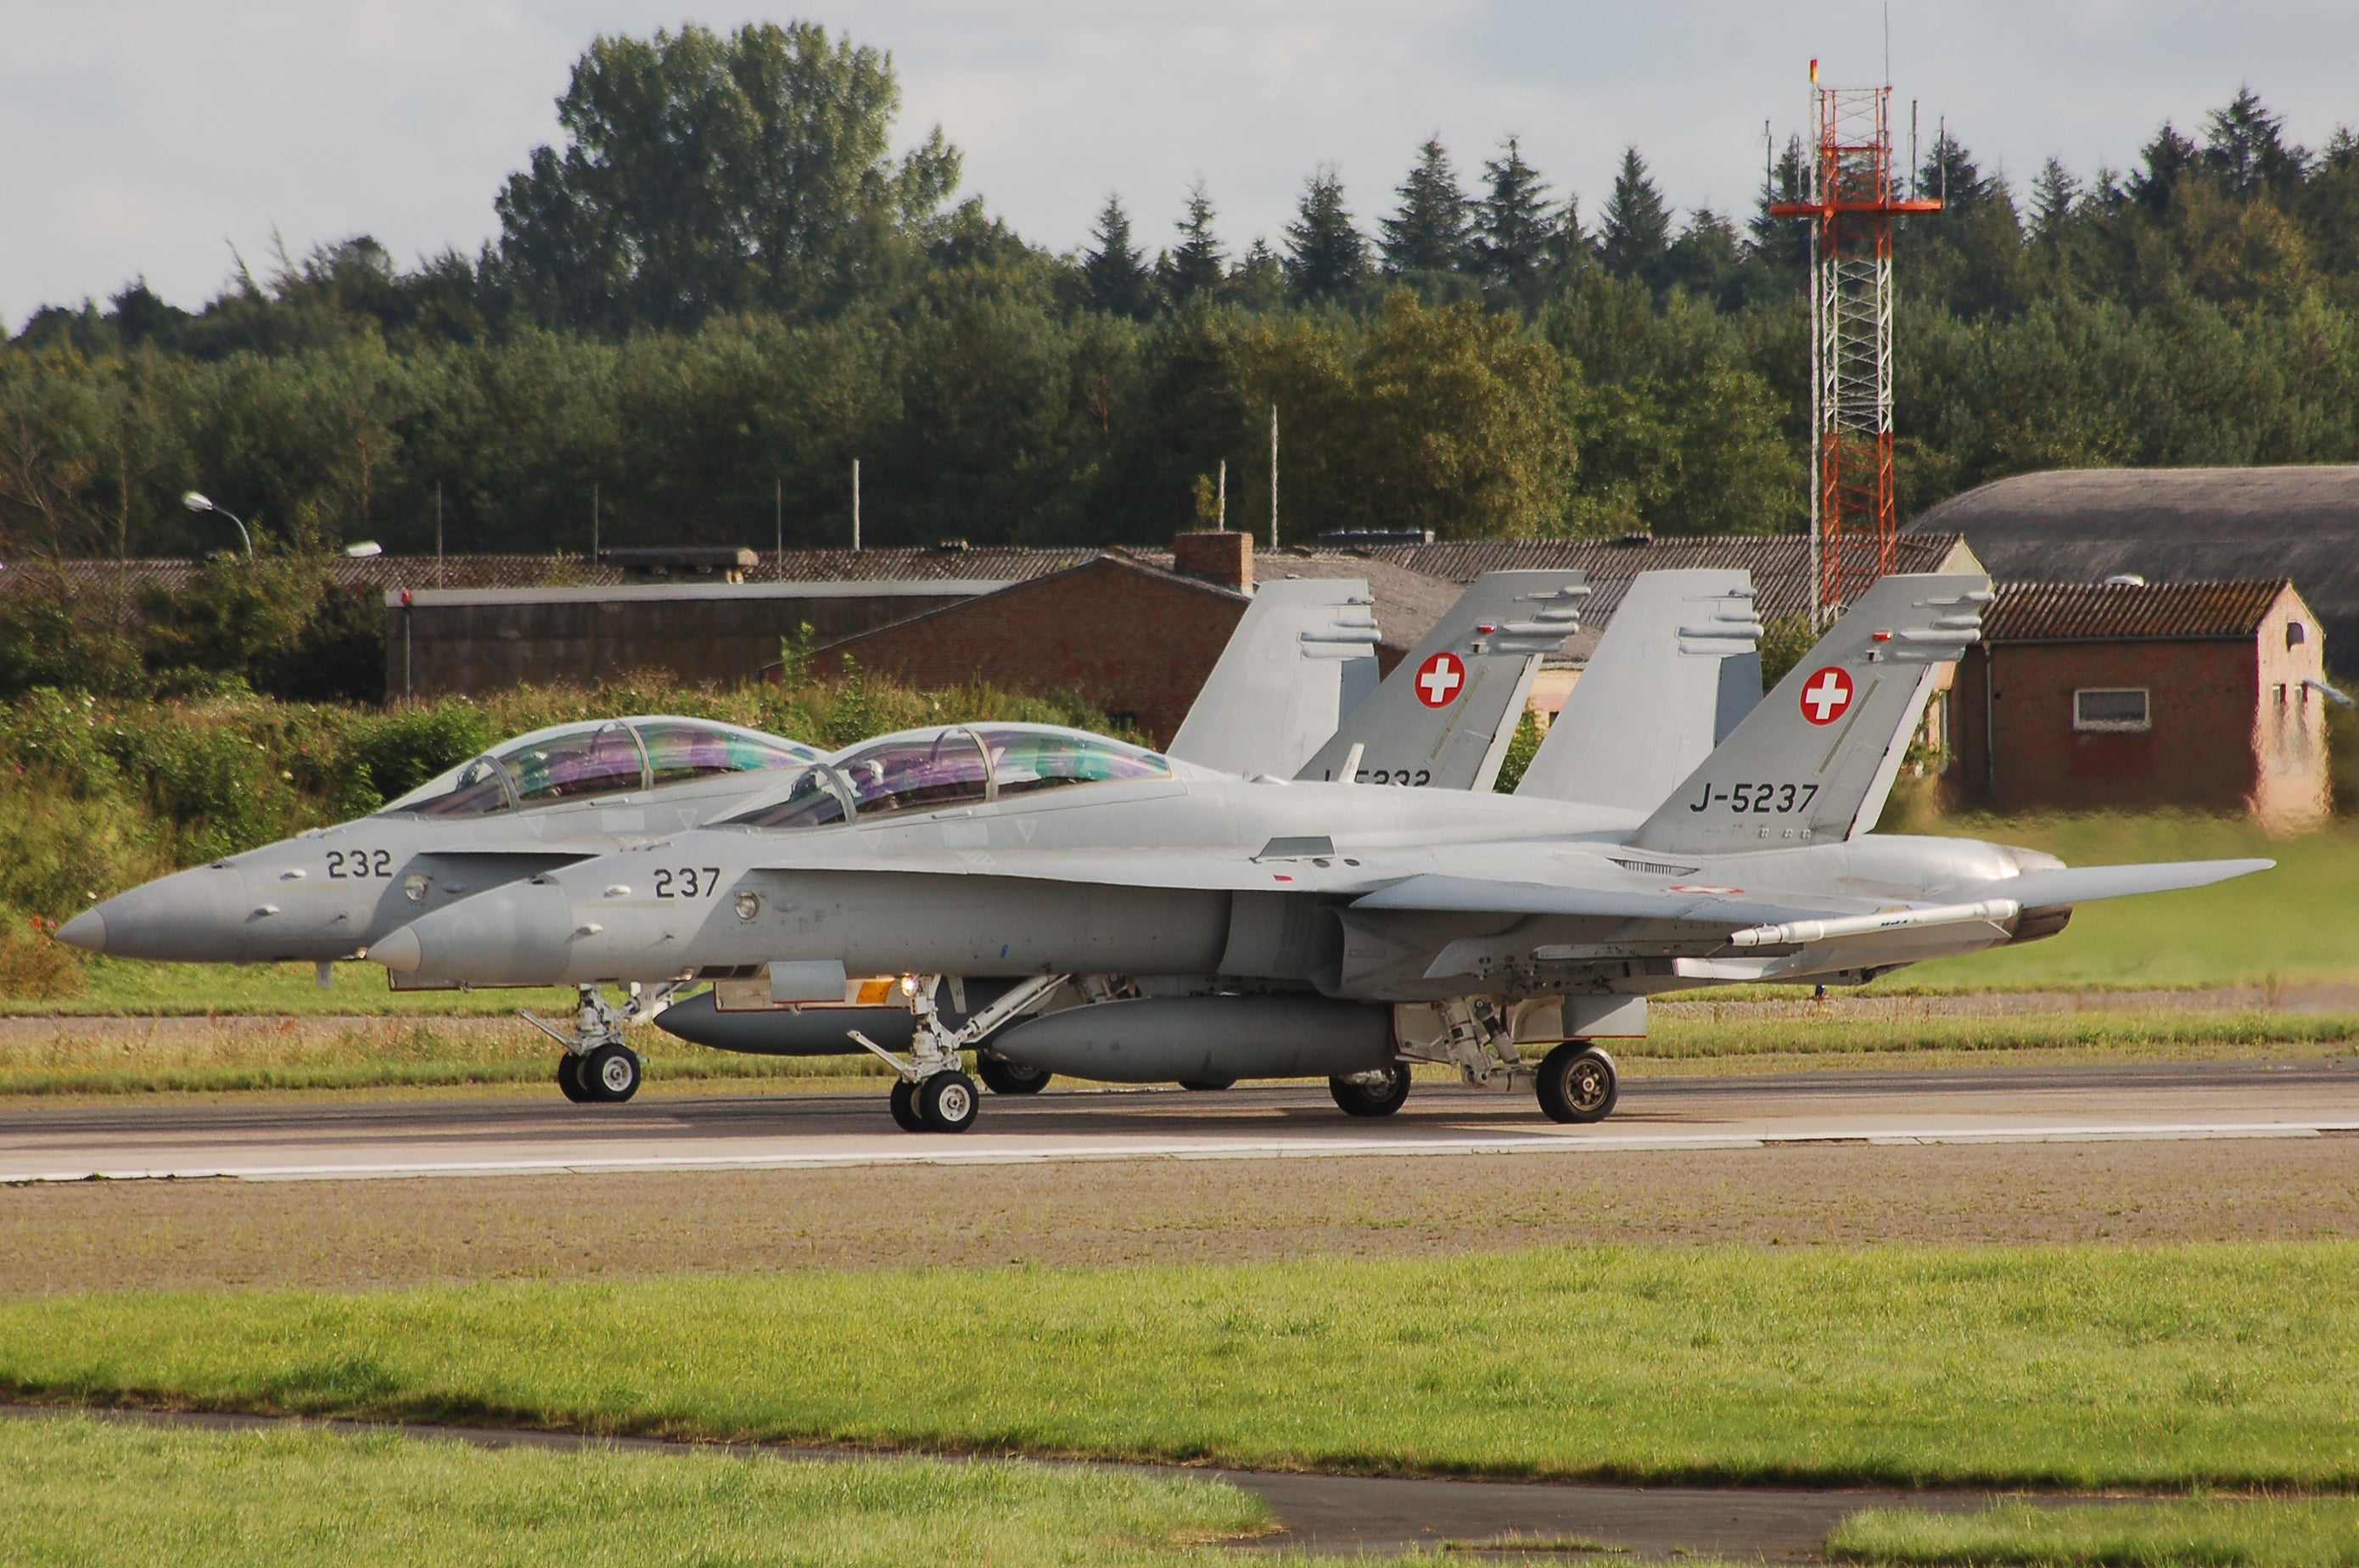 The Swiss Air Force F-18 Hornet aircraft